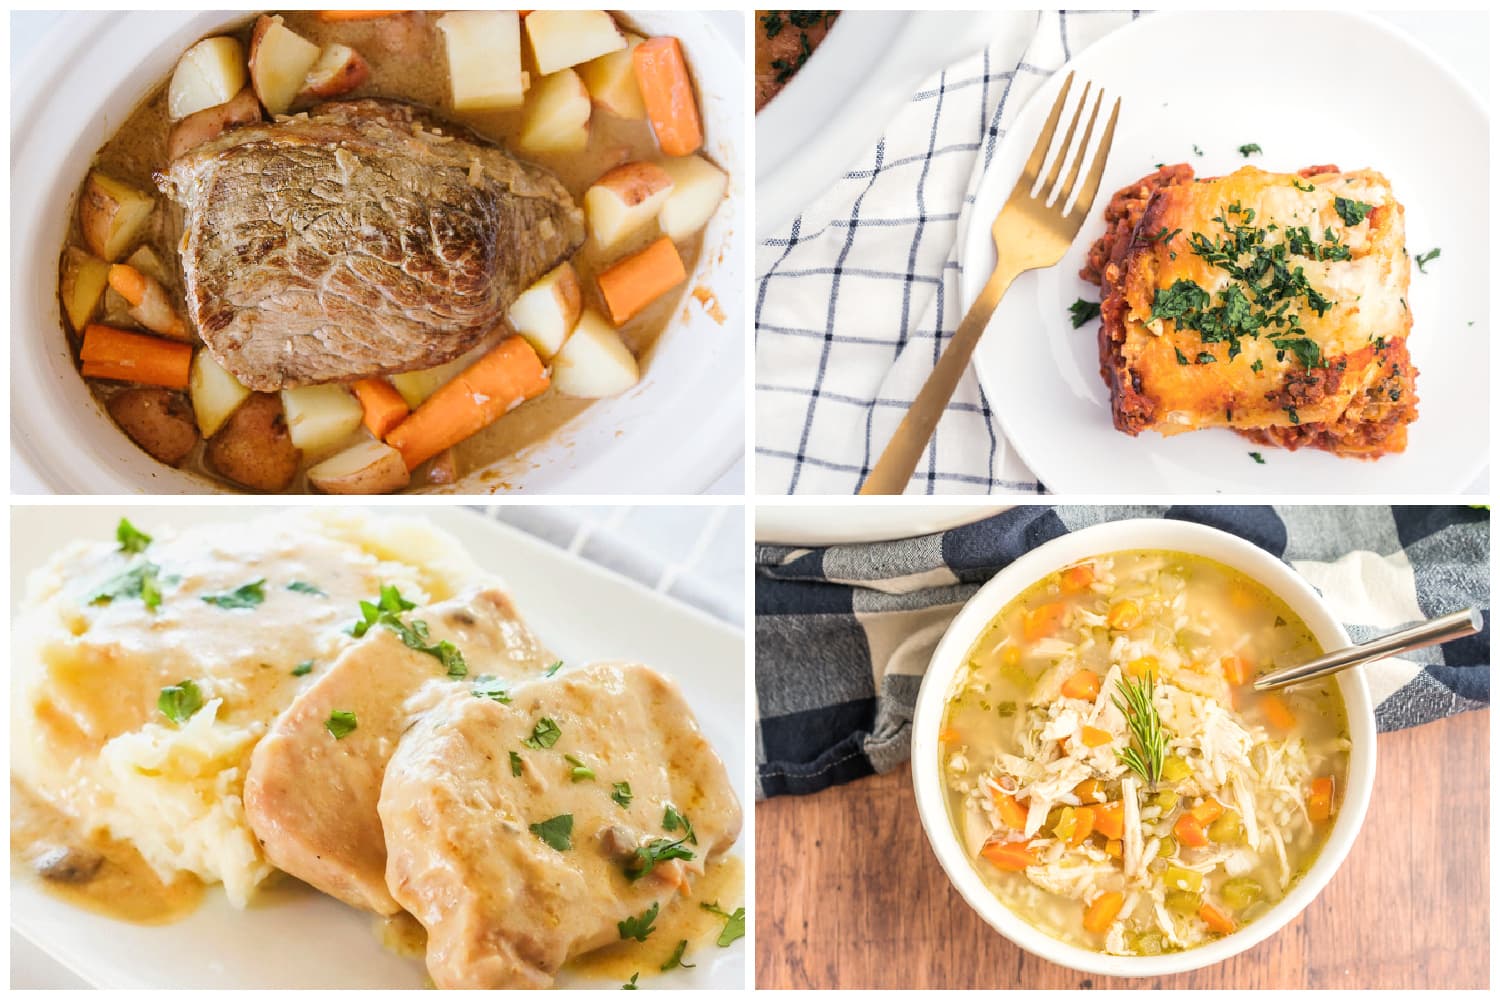 Crockpot Dinner Recipes: 12 Easy Dump-and-Go Crockpot Dinners